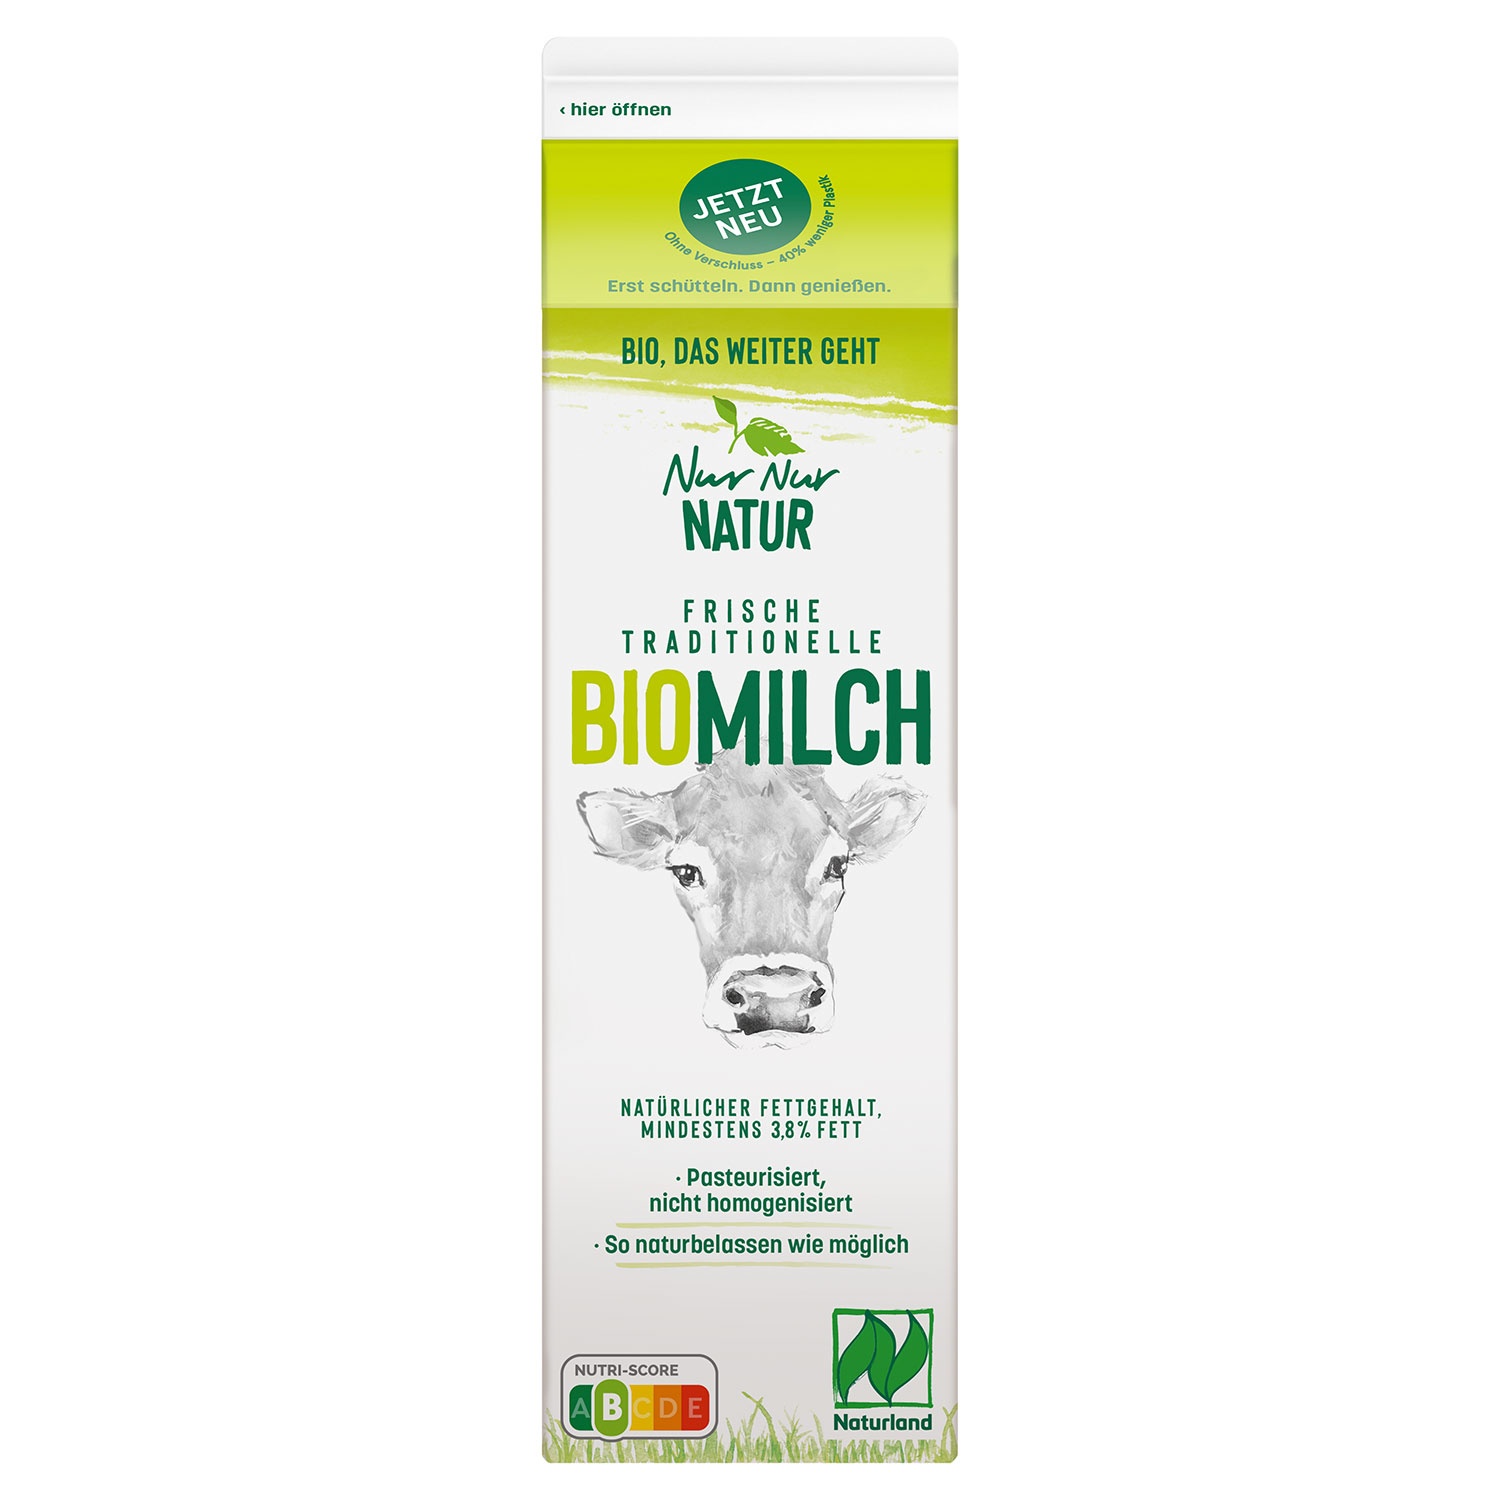 NUR NUR NATUR Bio-Frischmilch 3,8 % 1 l